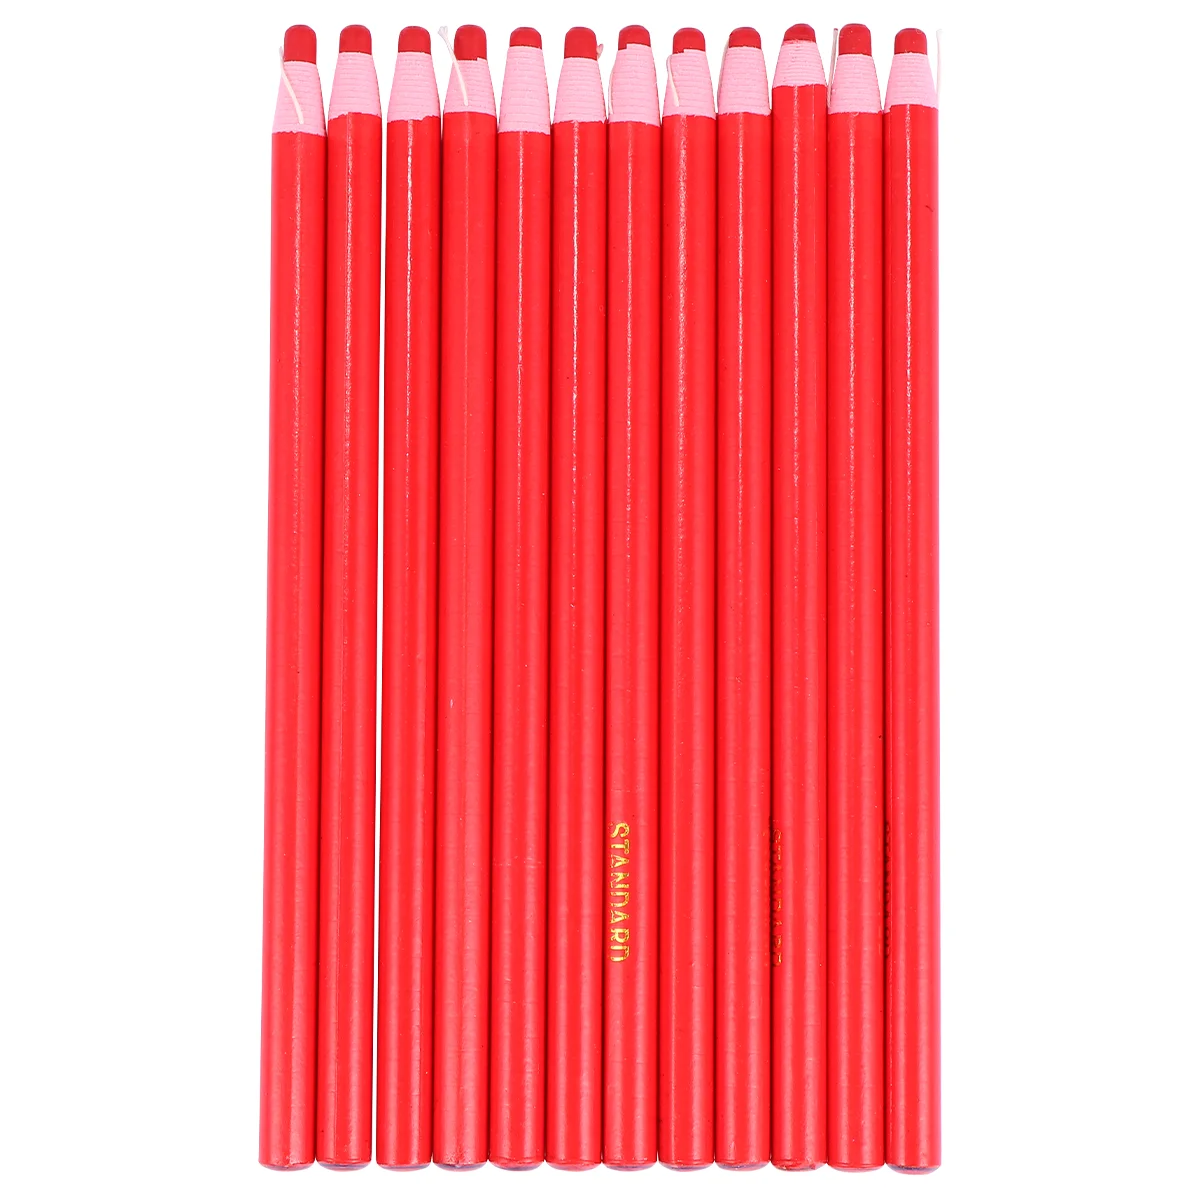 

Маркер со смазкой, китайская маркировка, восковая ручка, карандаш, маркеры для шитья ткани, карандаши, мелки для рисования, цветная белая бумага, черный